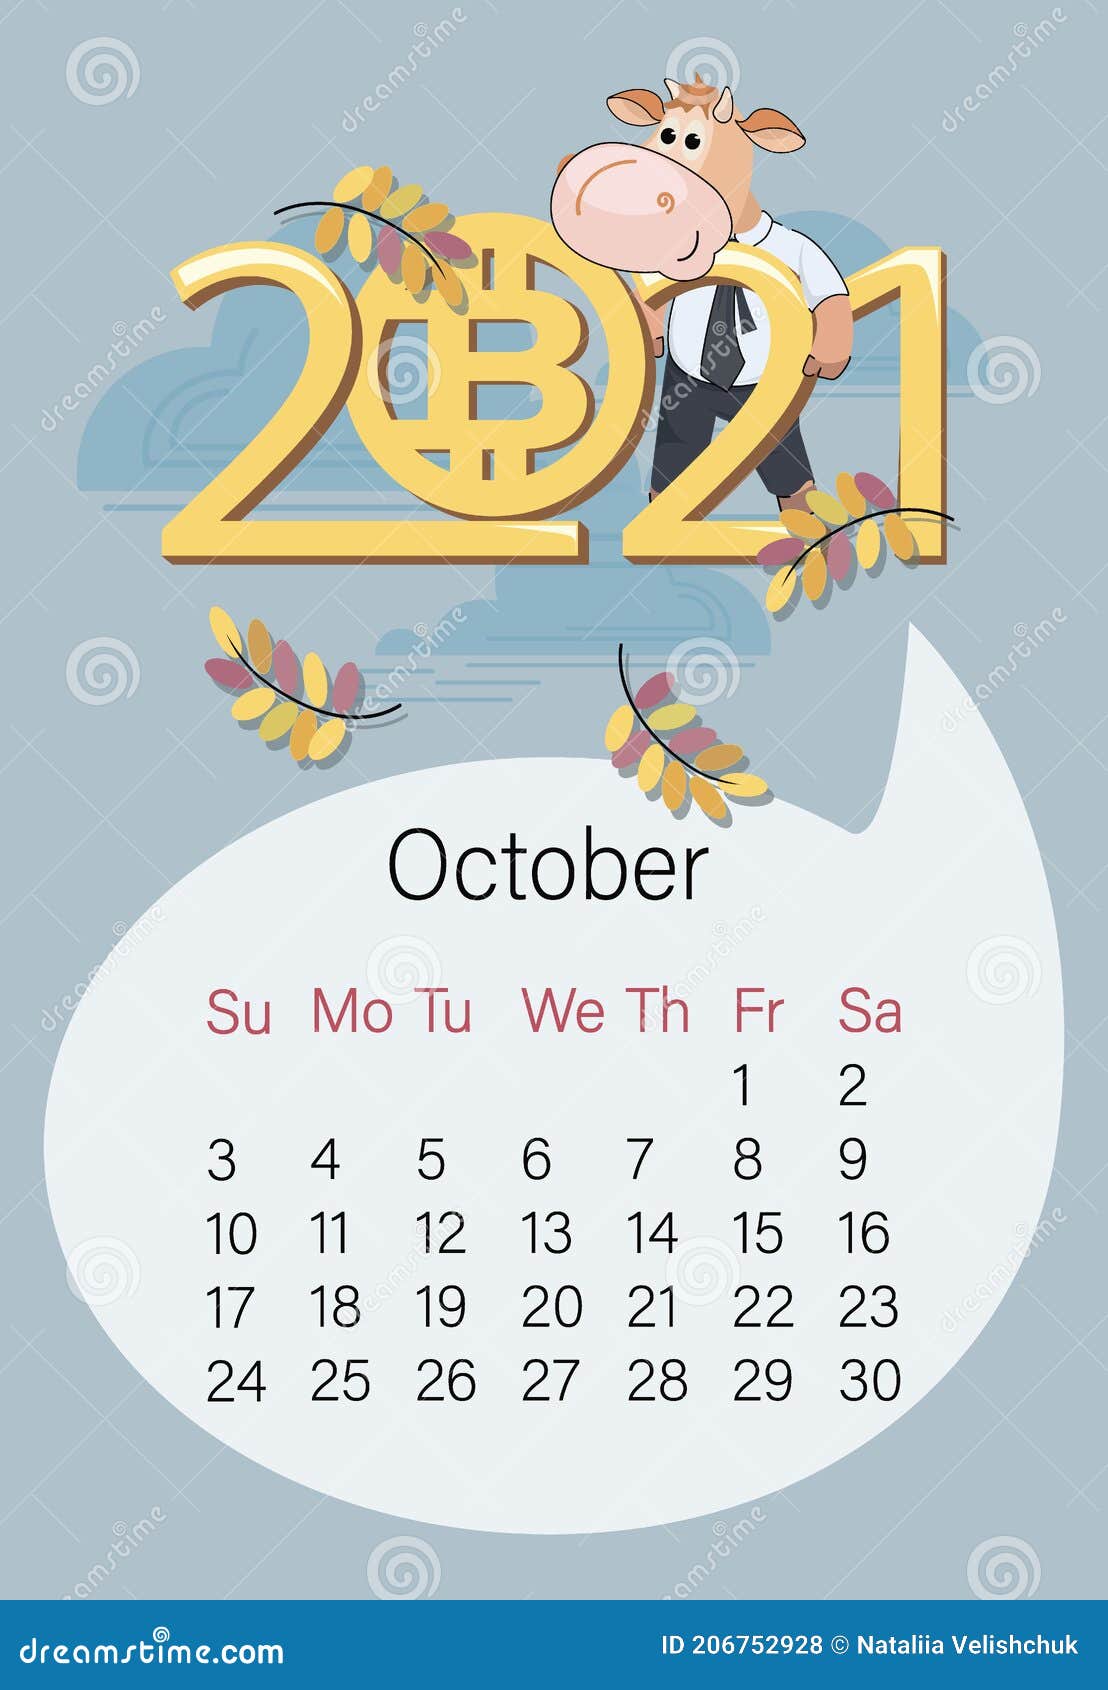 btc 2021 calendario